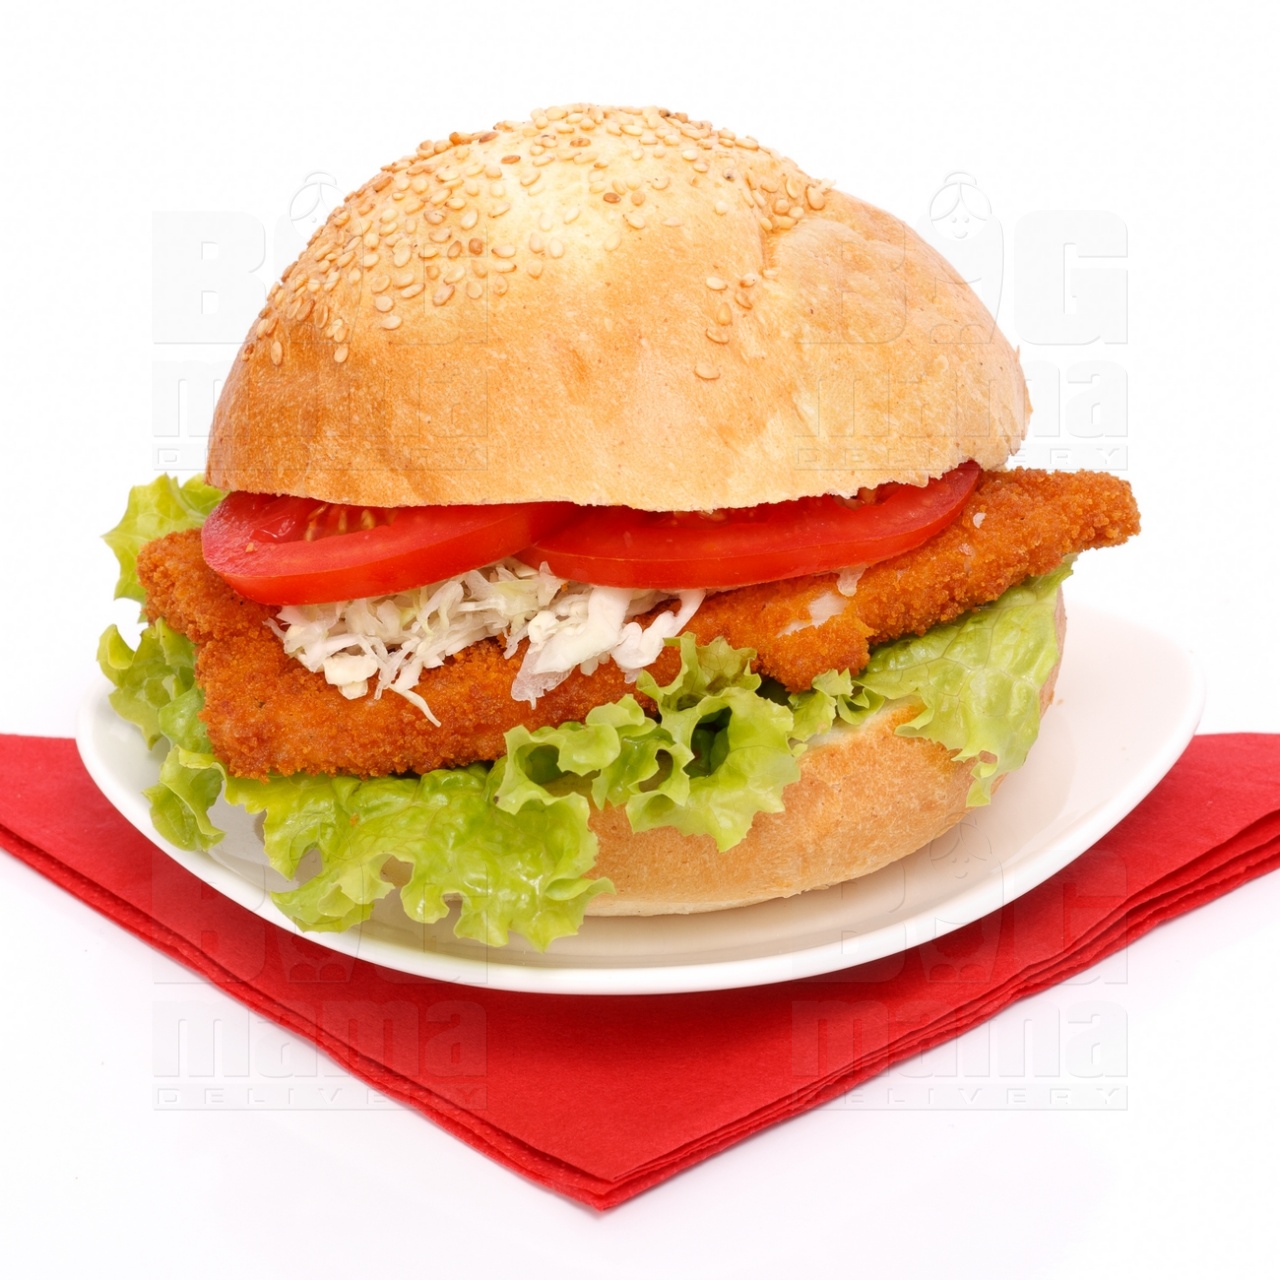 Product #59 image - Rántott csirkemelles szendvics